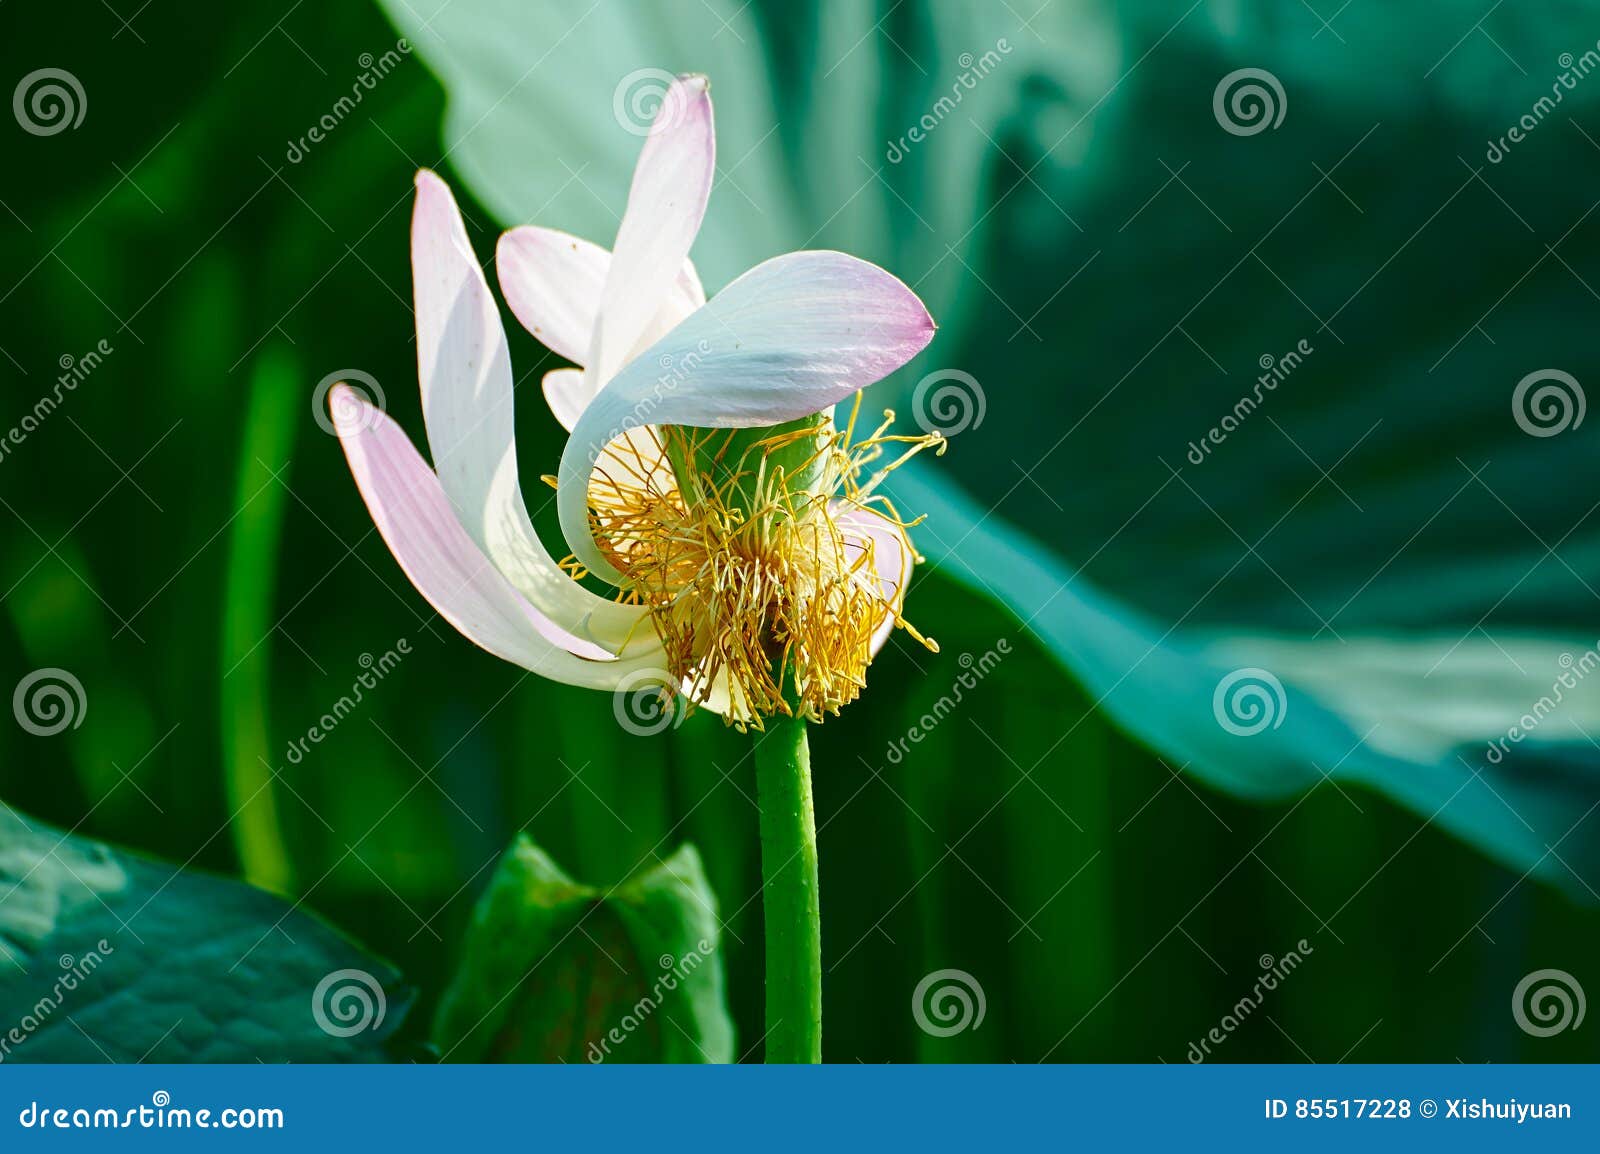 a comely lotus pistil